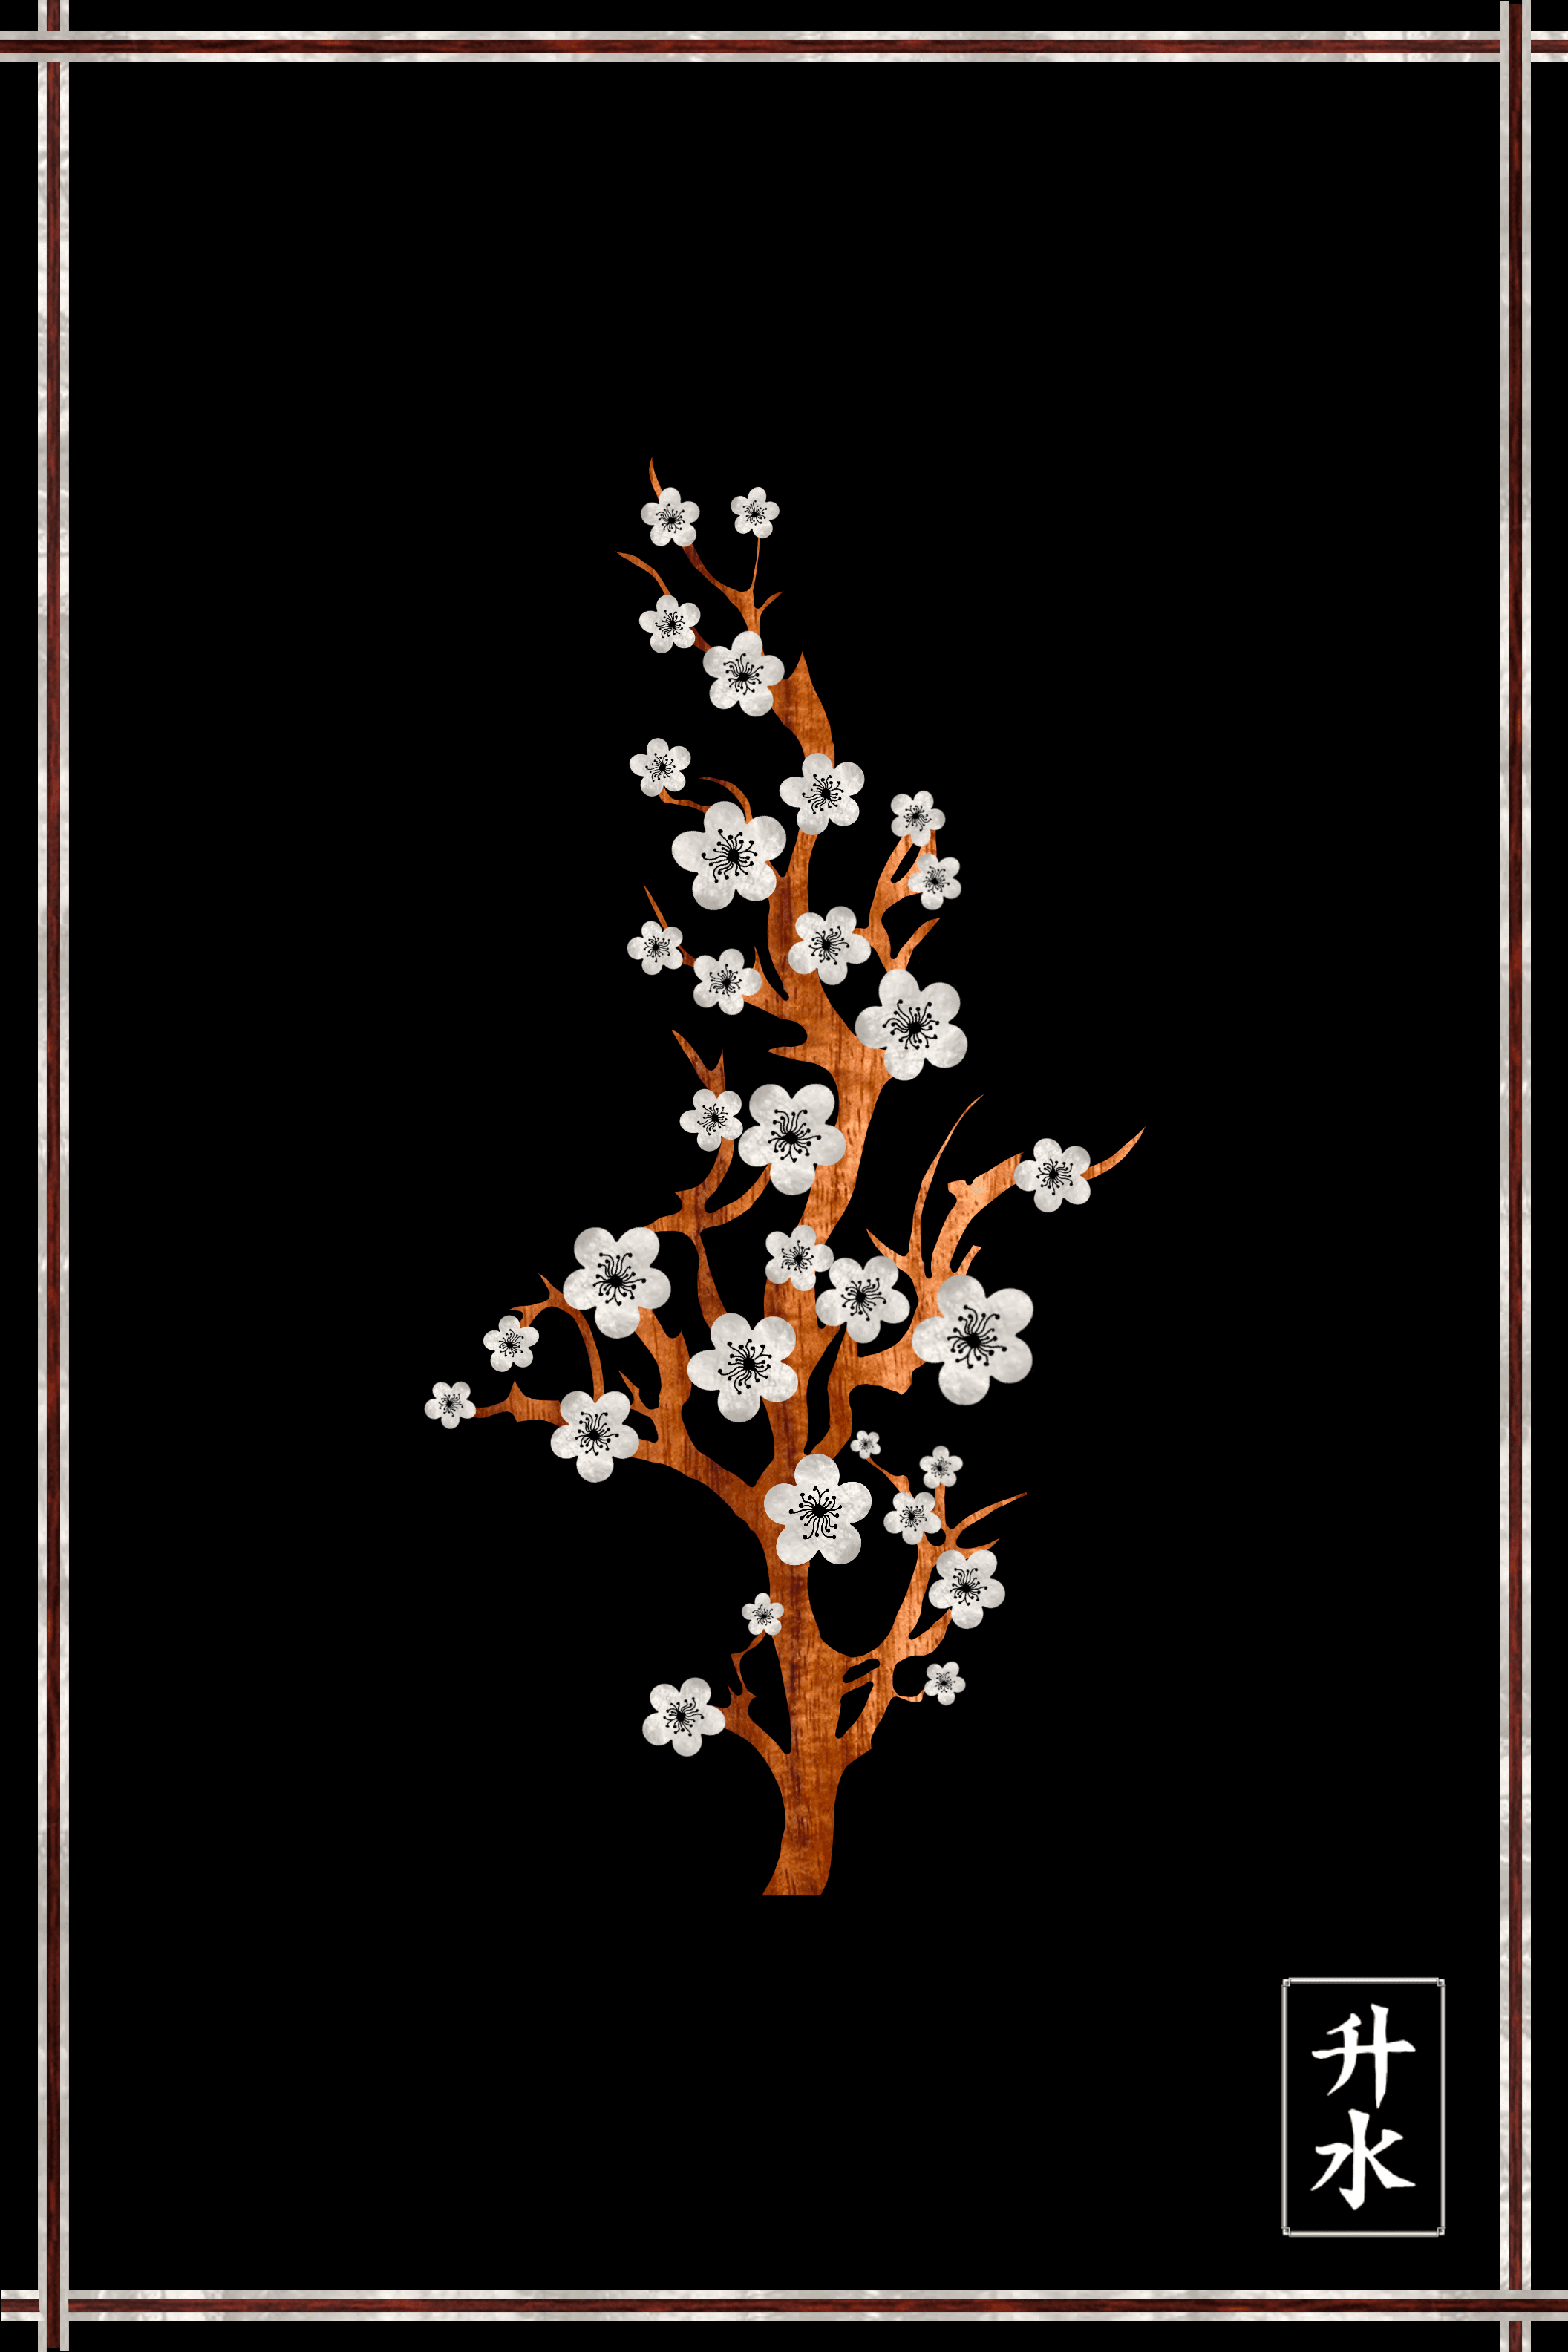 Koa Blossum 